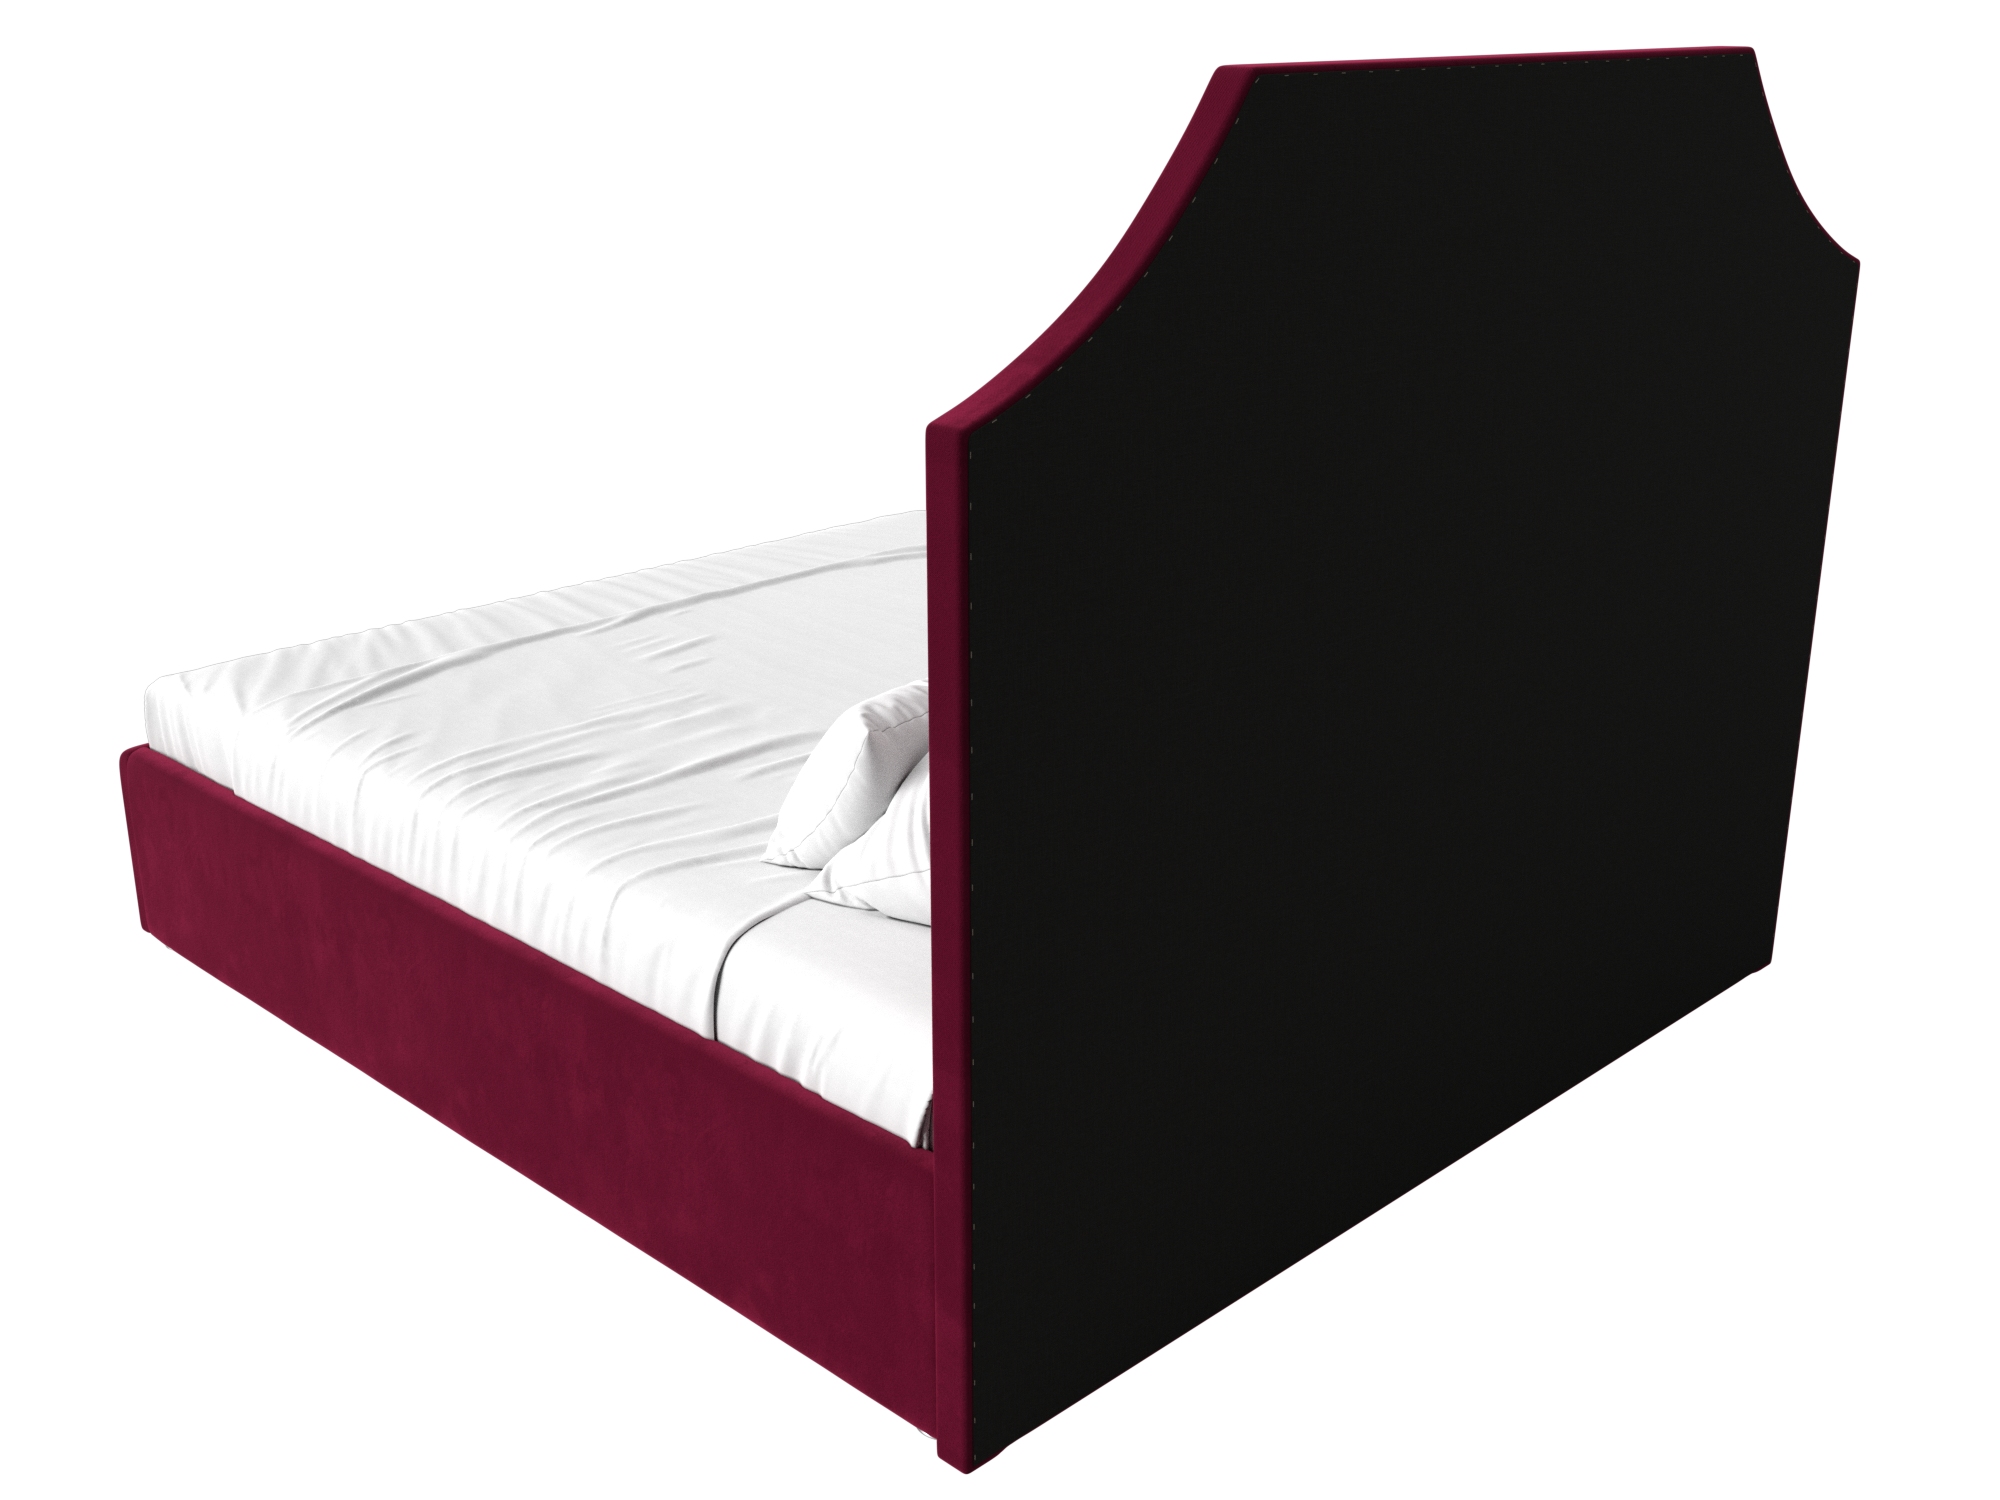 Интерьерная кровать Кантри 160 (Бордовый)